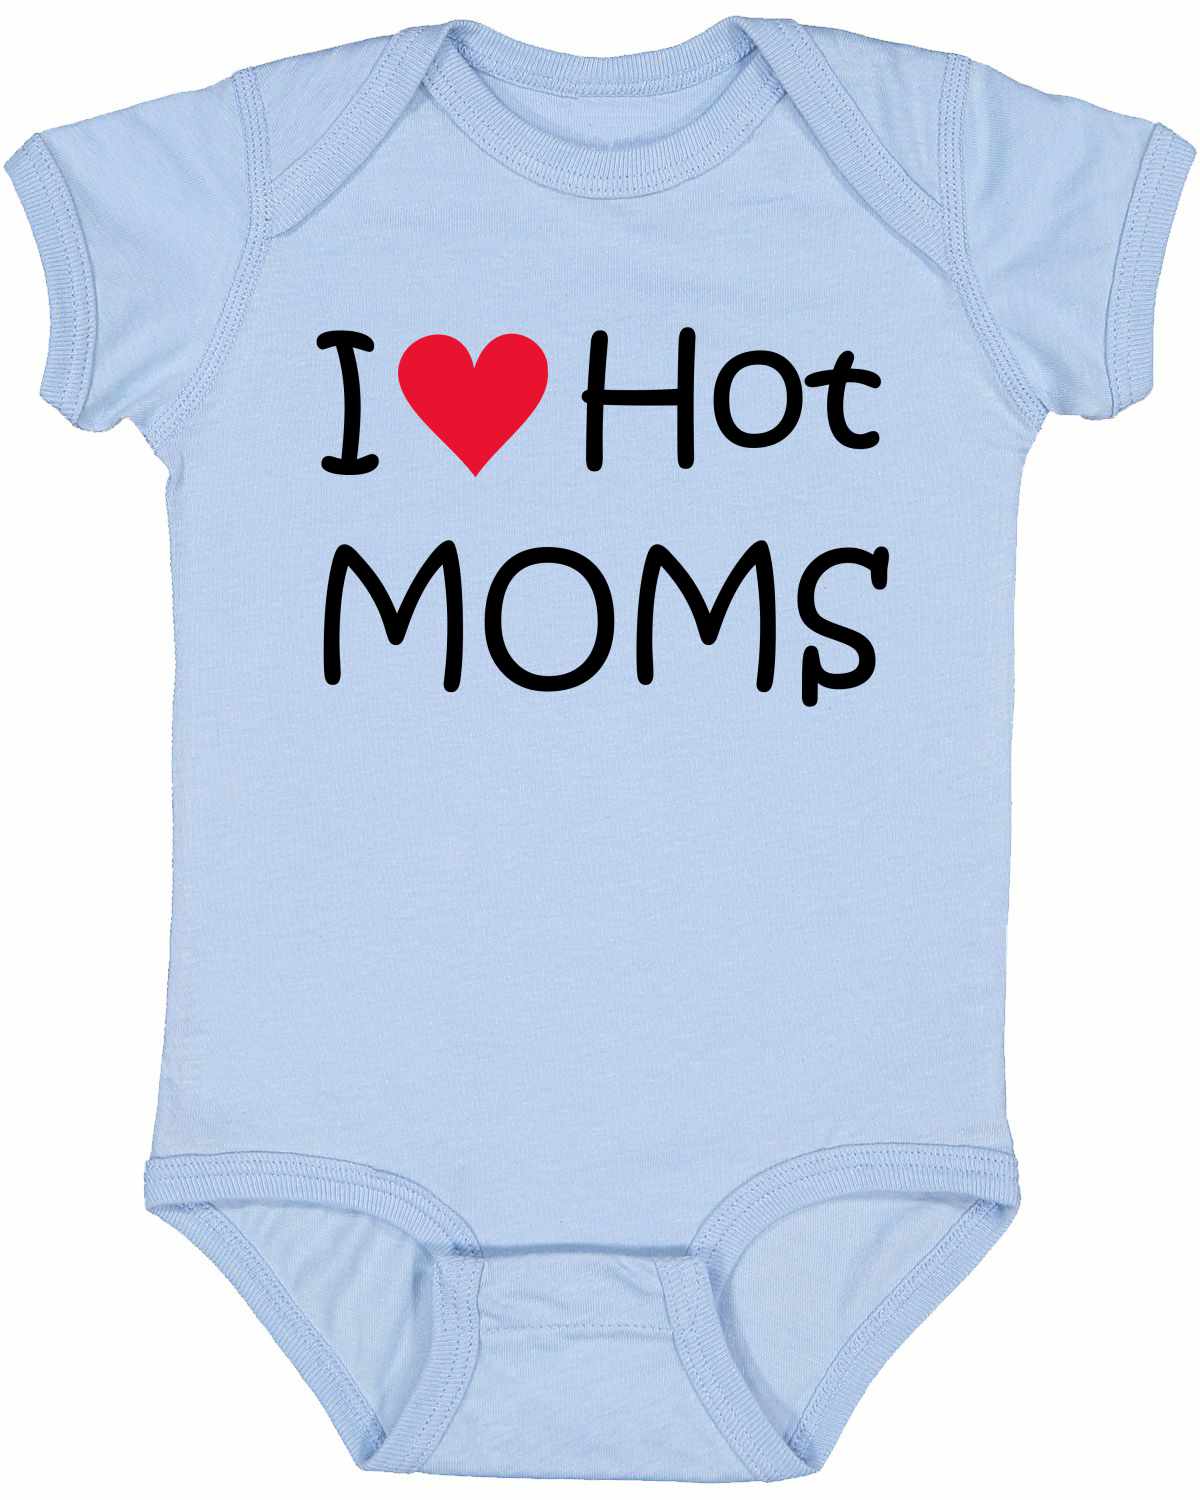 I LOVE HOT MOMS Infant BodySuit